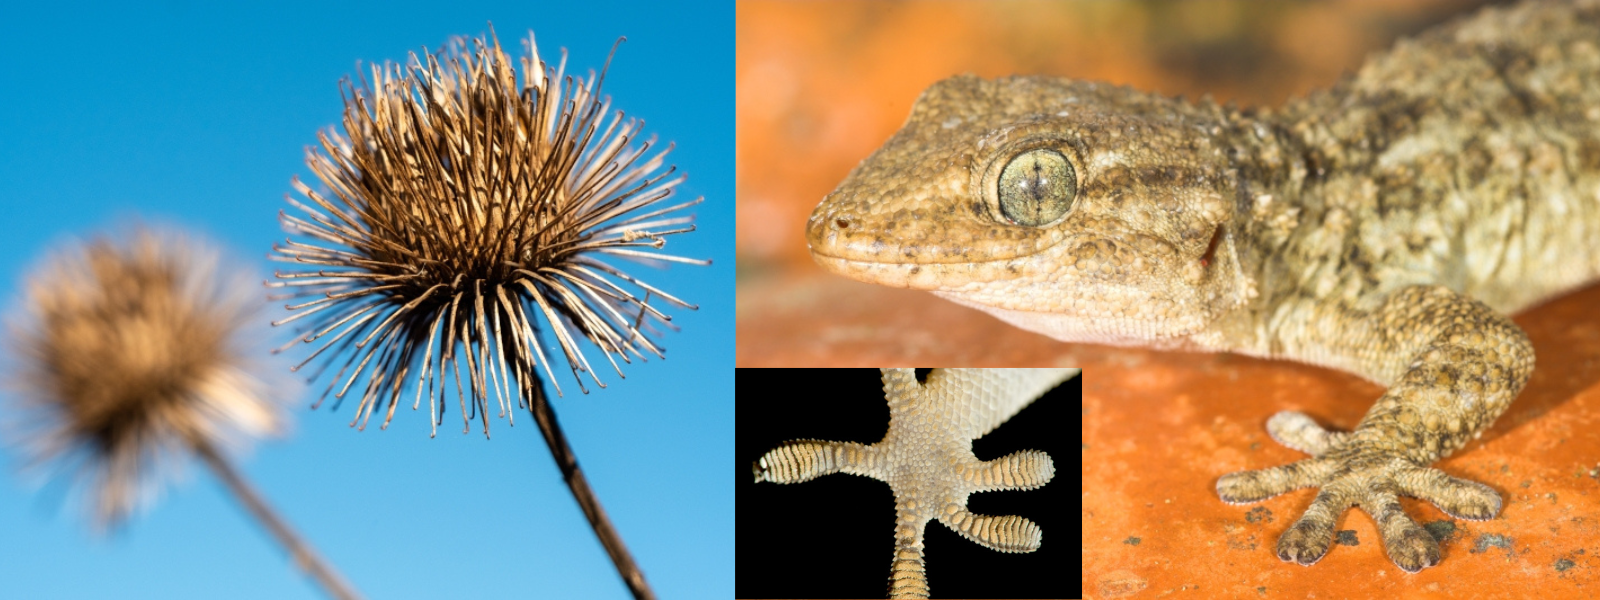 À gauche : grande bardane, à droite : gecko et détails de l'une de ses pattes